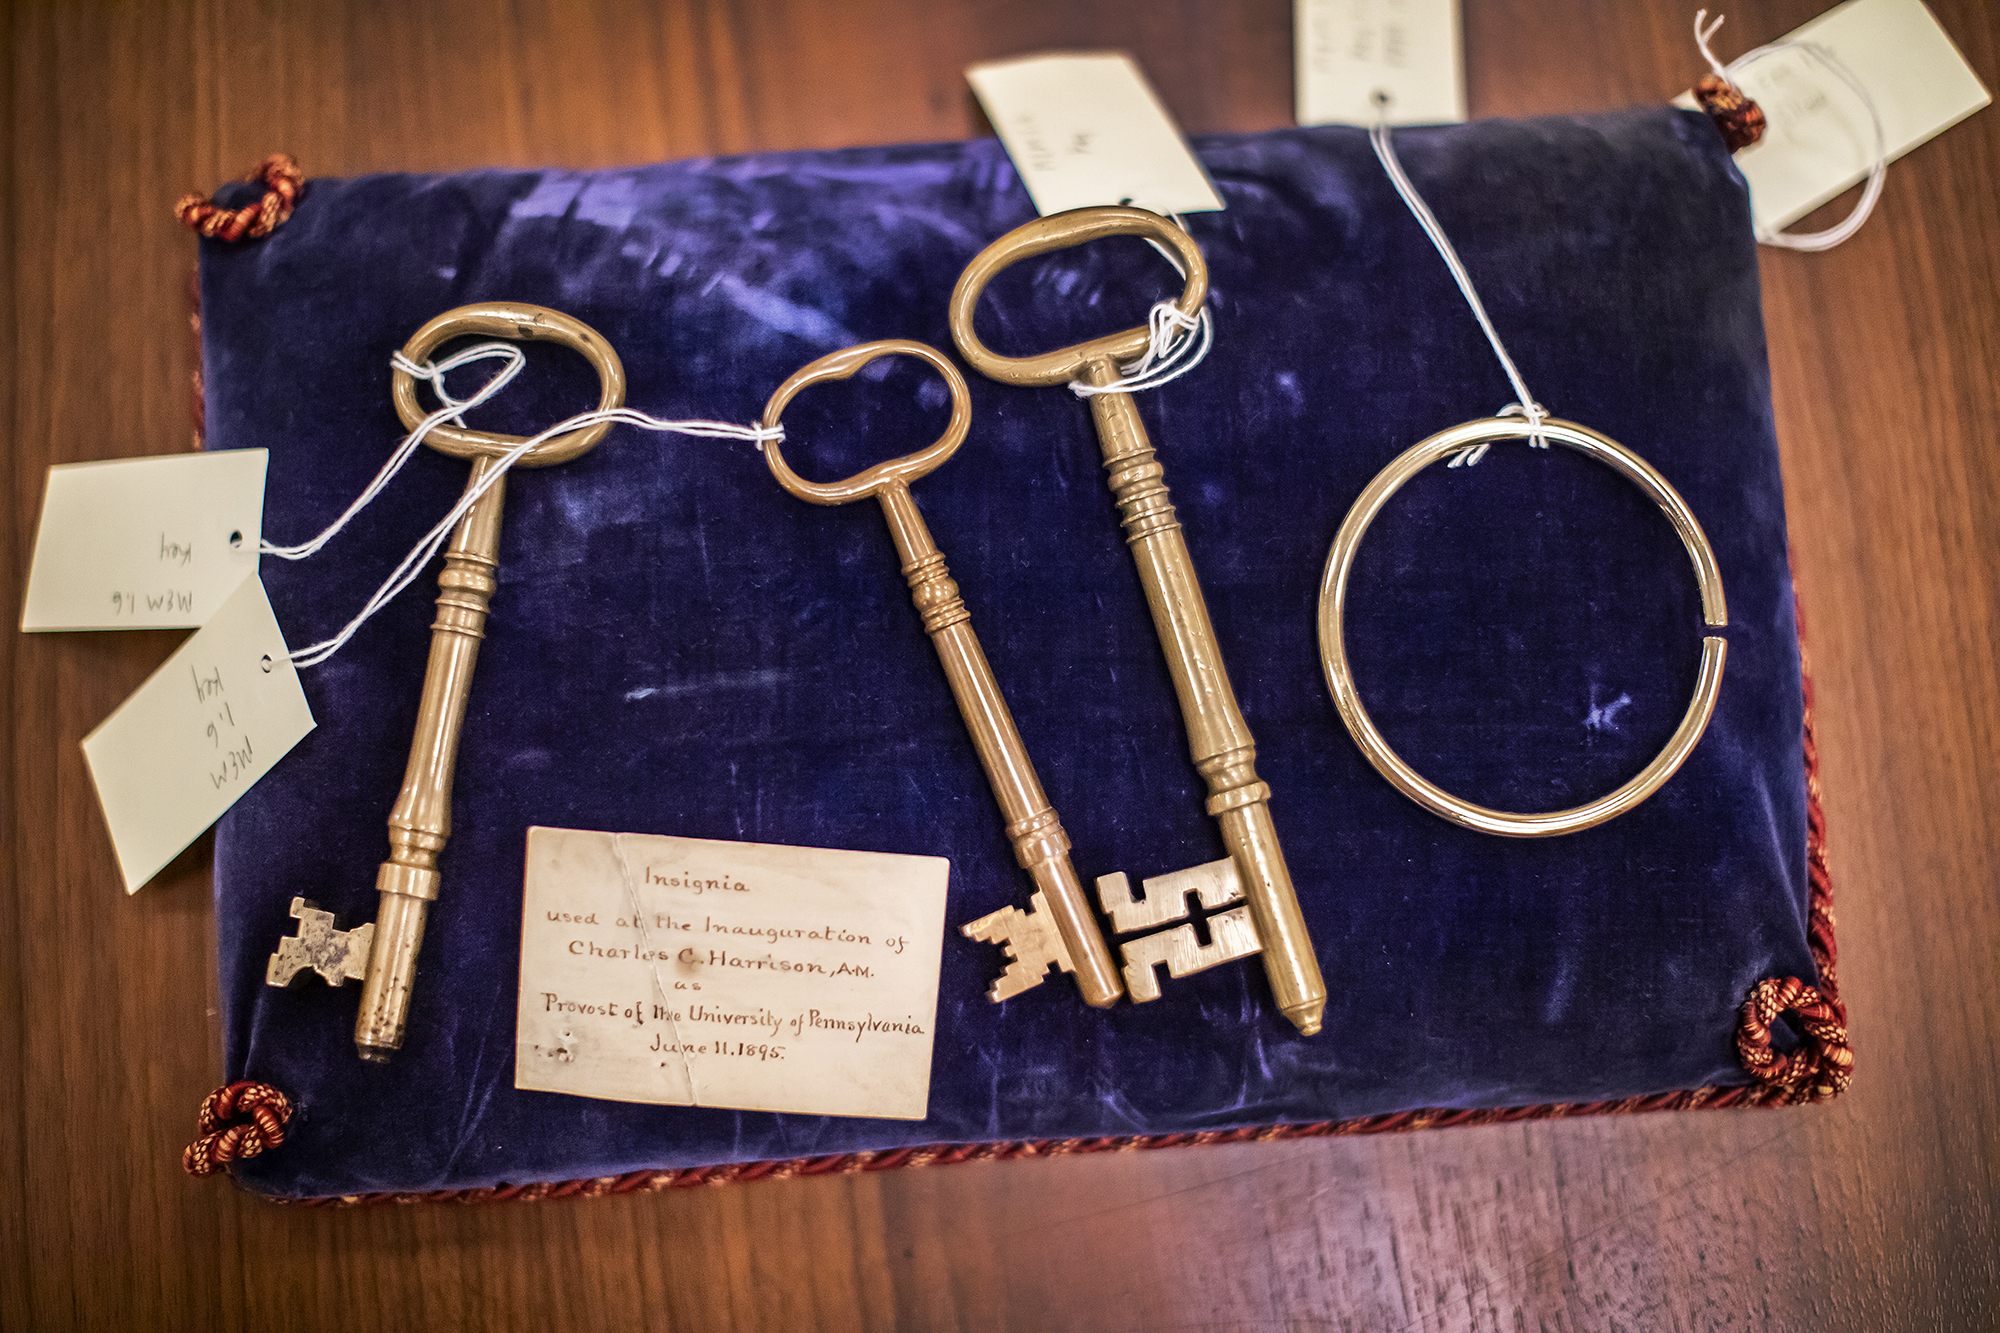 Historical keys used in Penn president inaugurations on a velvet bag on a table.